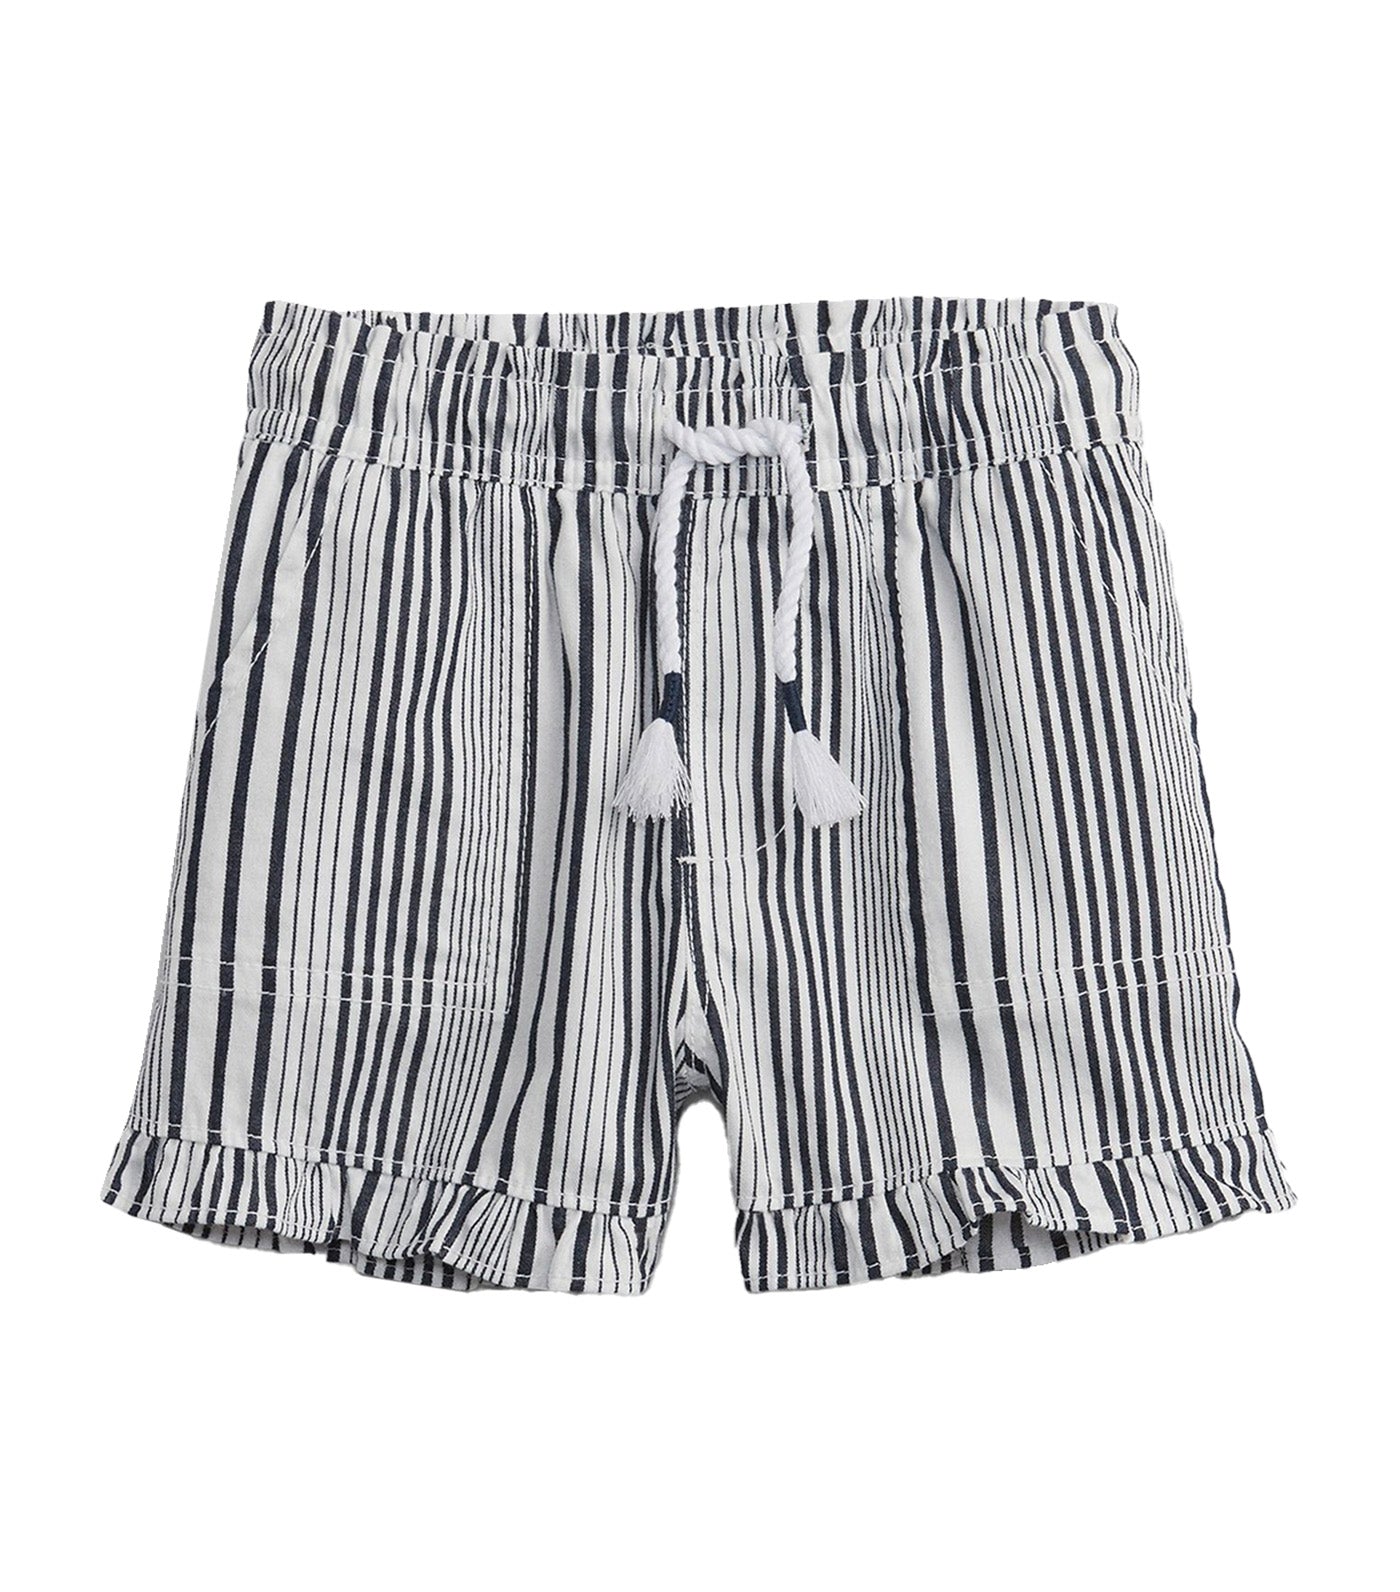 Toddler Shorts - White Navy Stripe